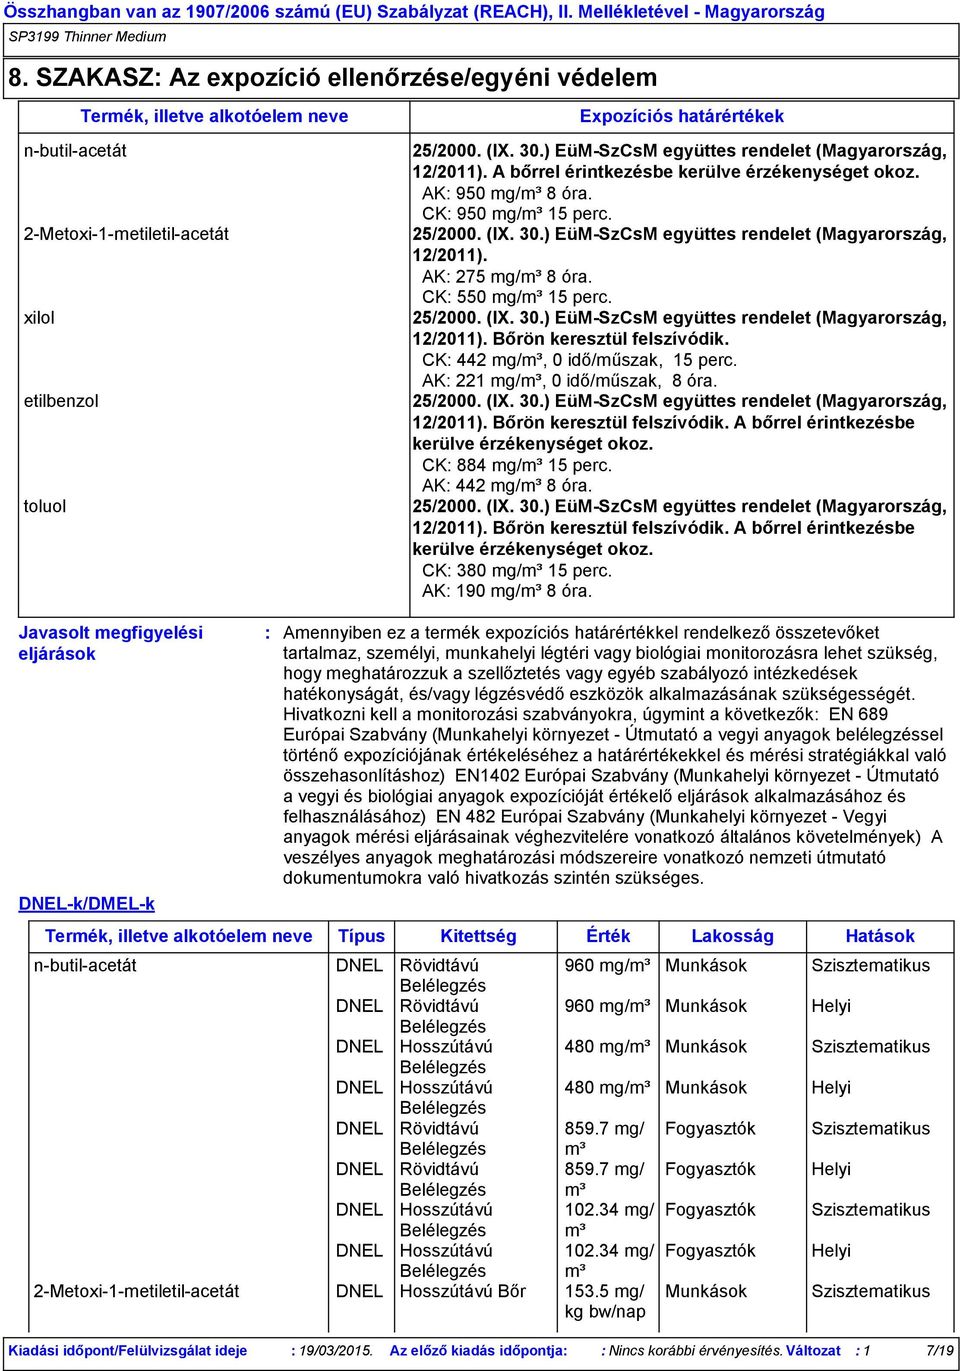 ) EüM-SzCsM együttes rendelet (Magyarország, 12/2011). AK 275 mg/m³ 8 óra. CK 550 mg/m³ 15 perc. 25/2000. (IX. 30.) EüM-SzCsM együttes rendelet (Magyarország, 12/2011). Bőrön keresztül felszívódik.